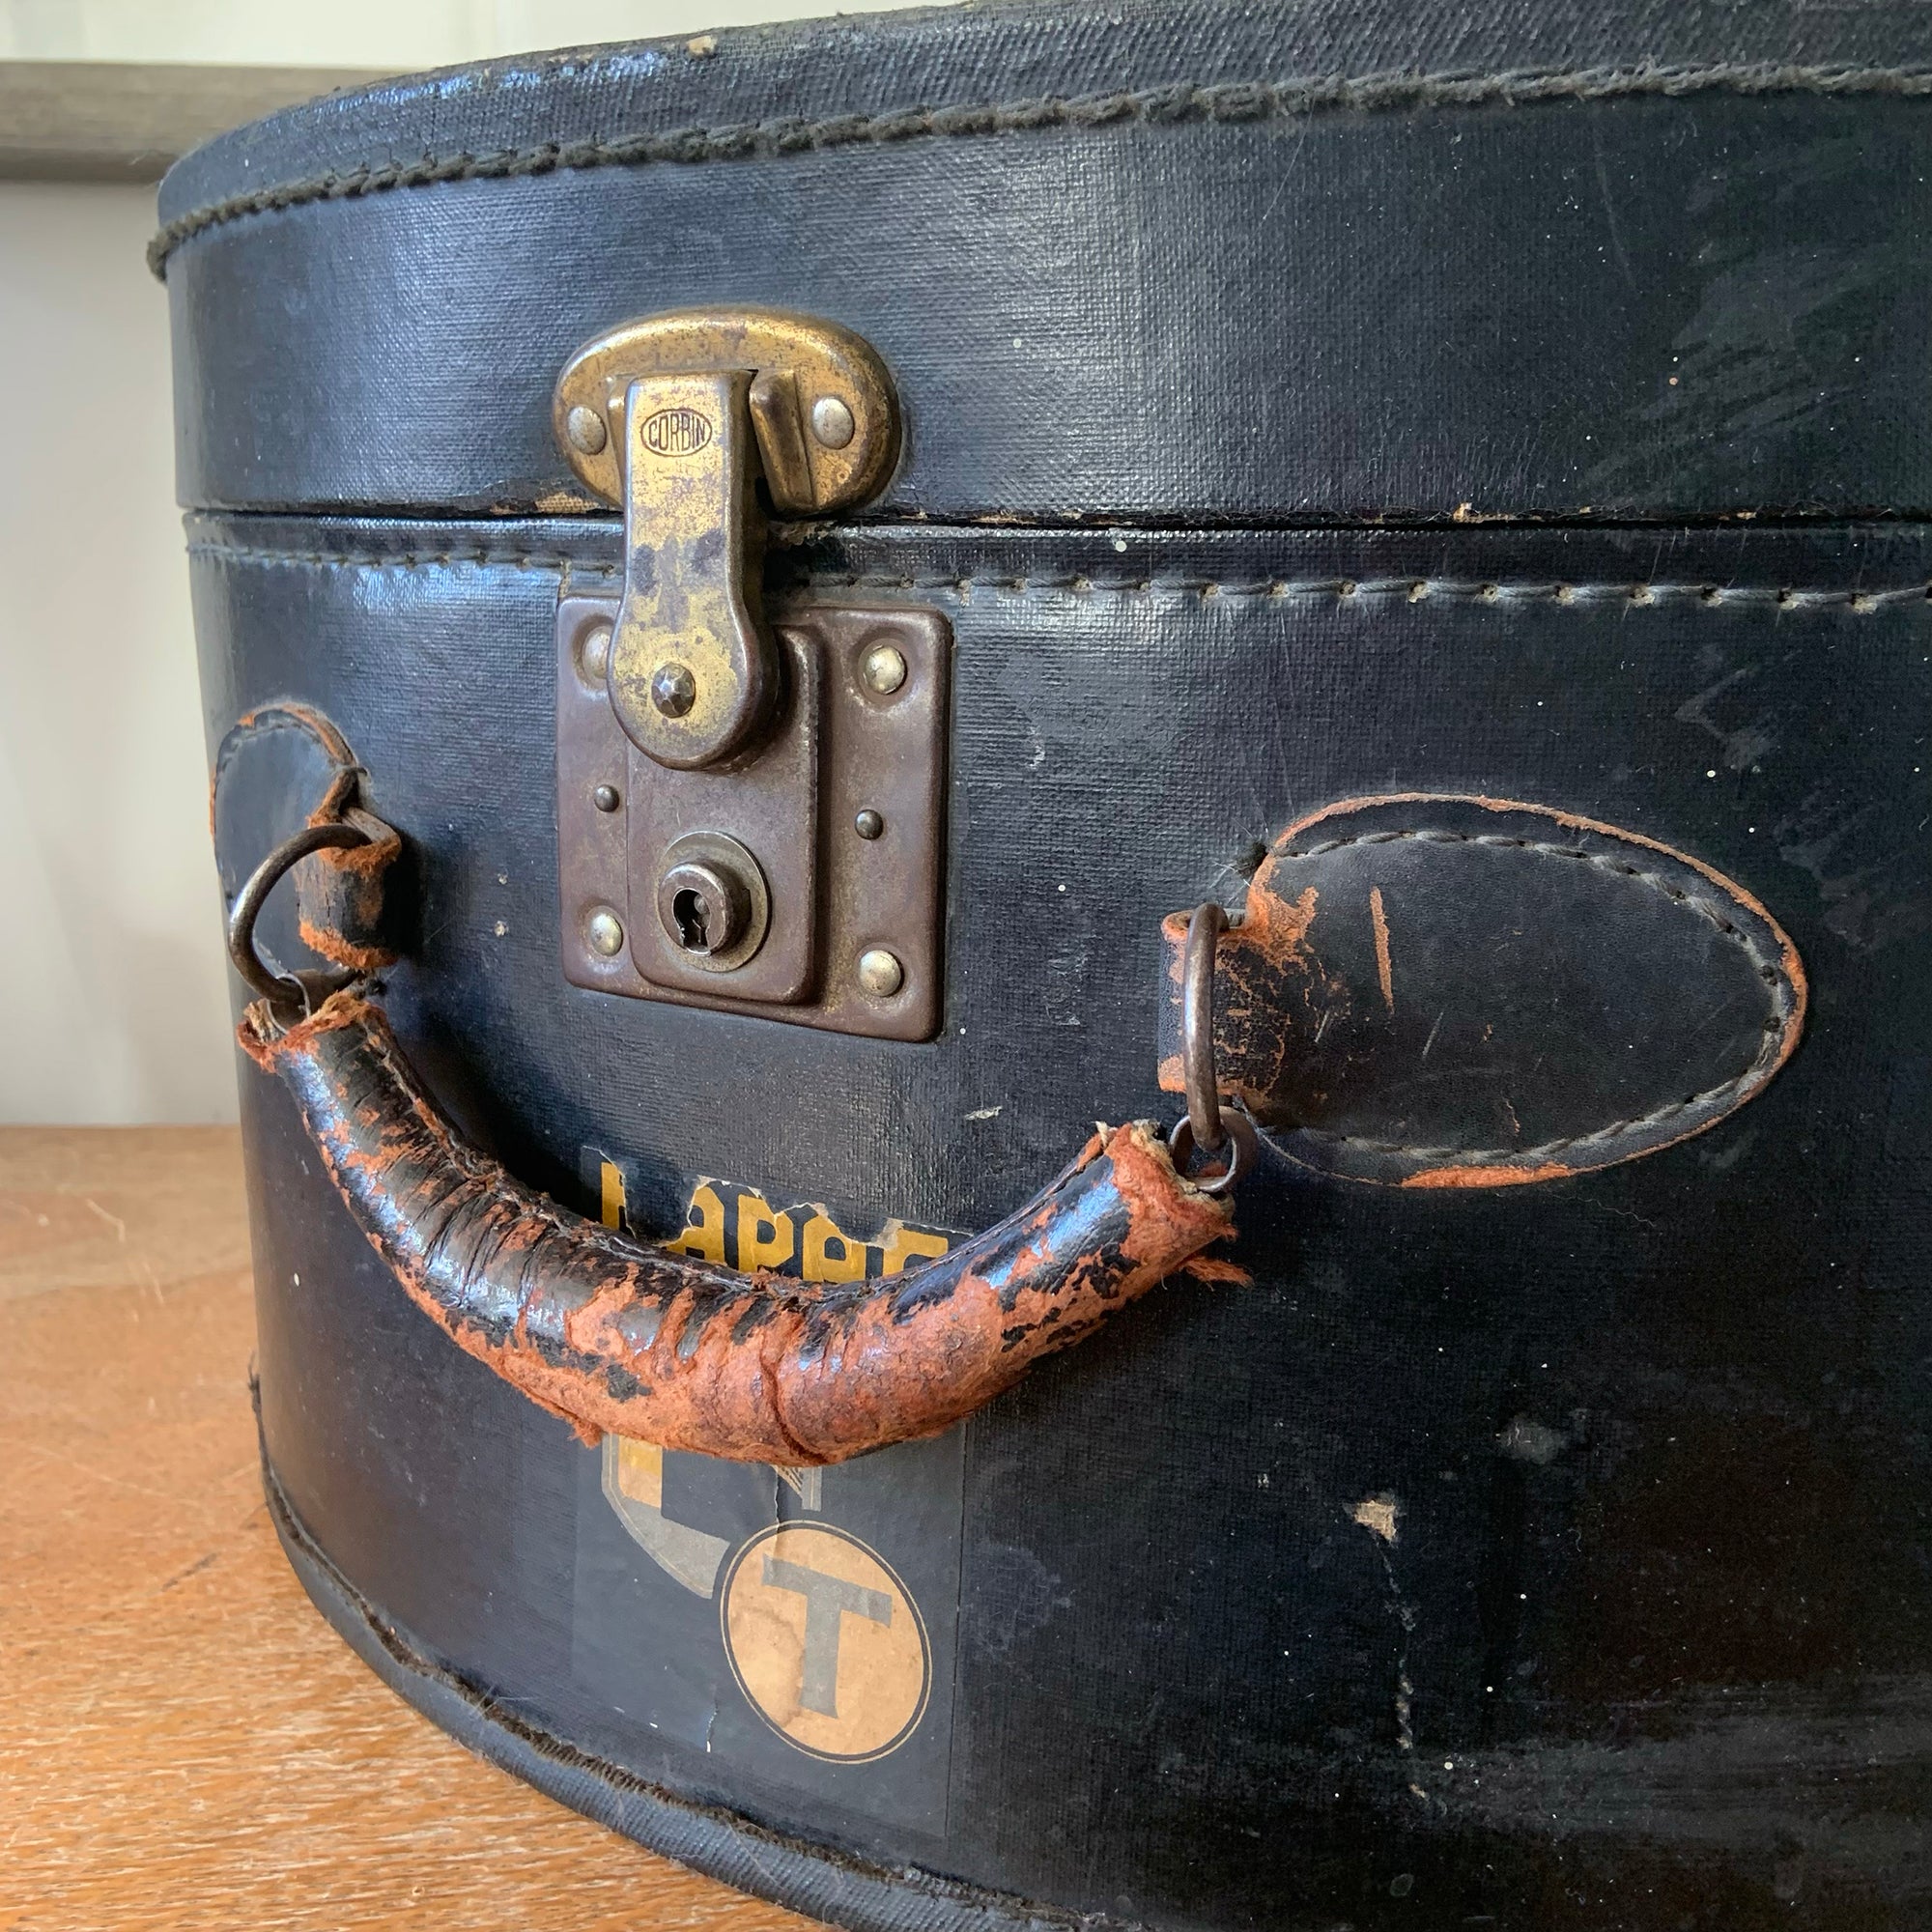 Vintage Round Train Case Travel Hat Box Antique Luggage